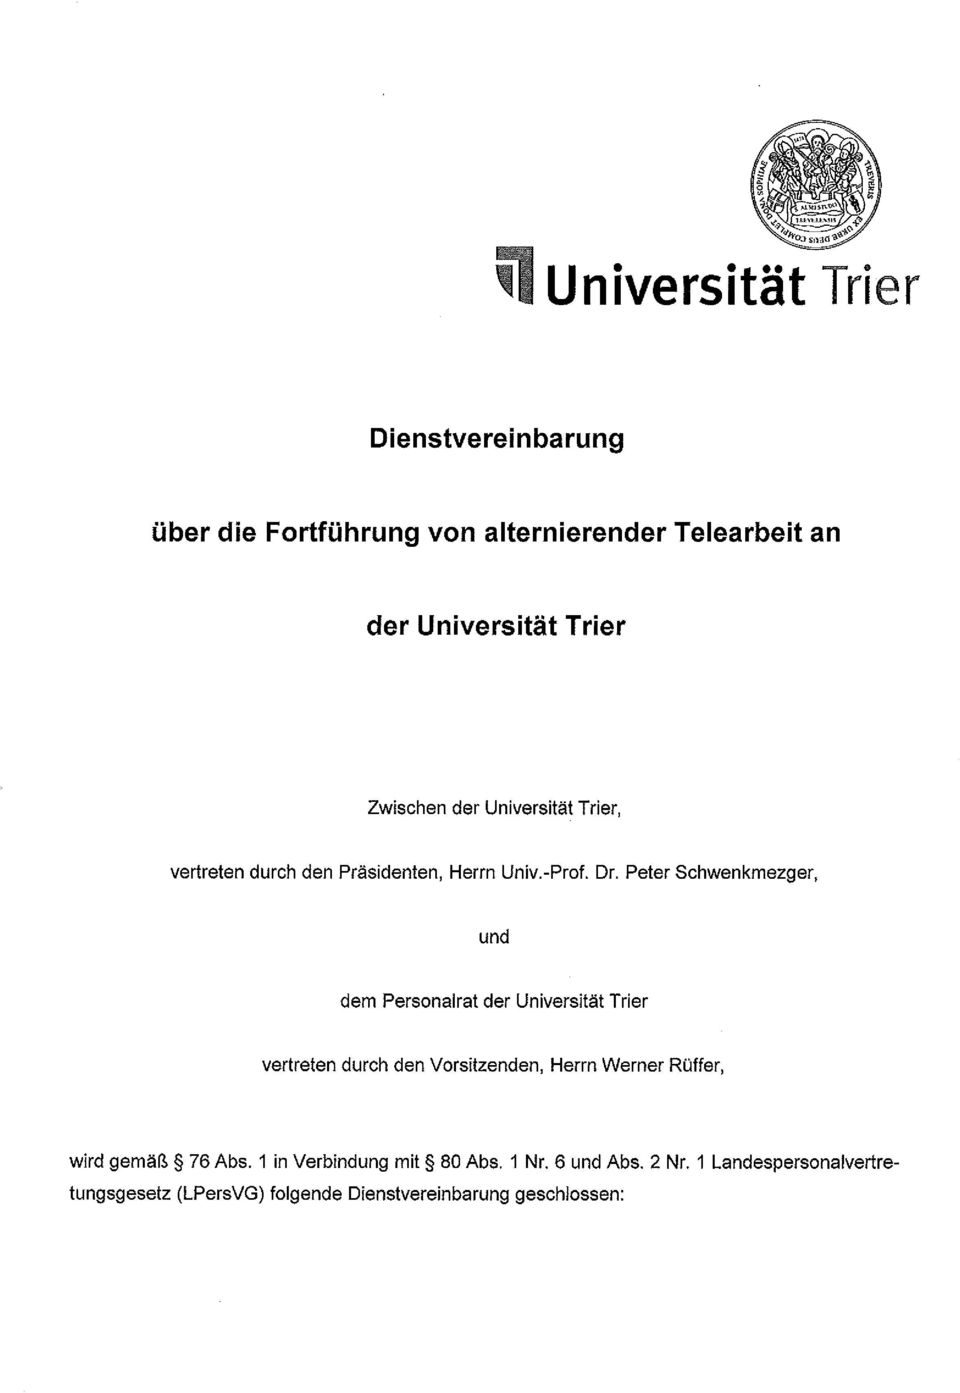 Peter Schwenkmezger, und dem Personalrat der Universität Trier vertreten durch den Vorsitzenden, Herrn Werner Rüffer,